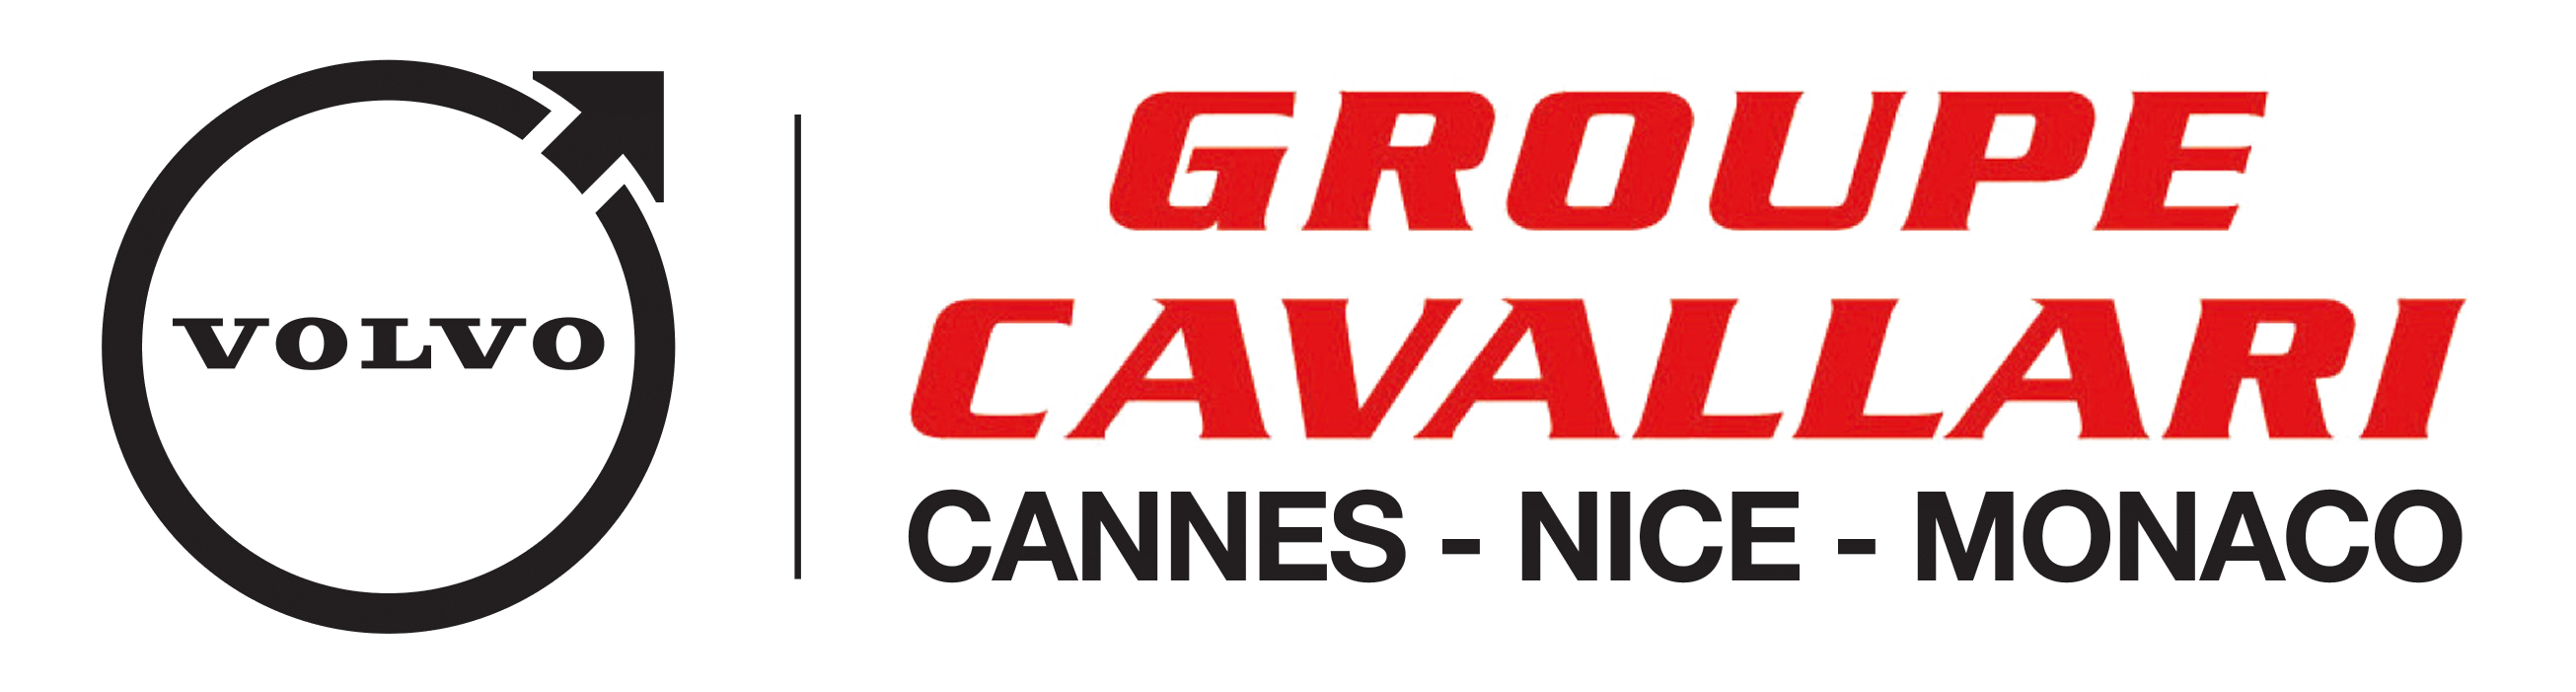 Groupe Cavallari